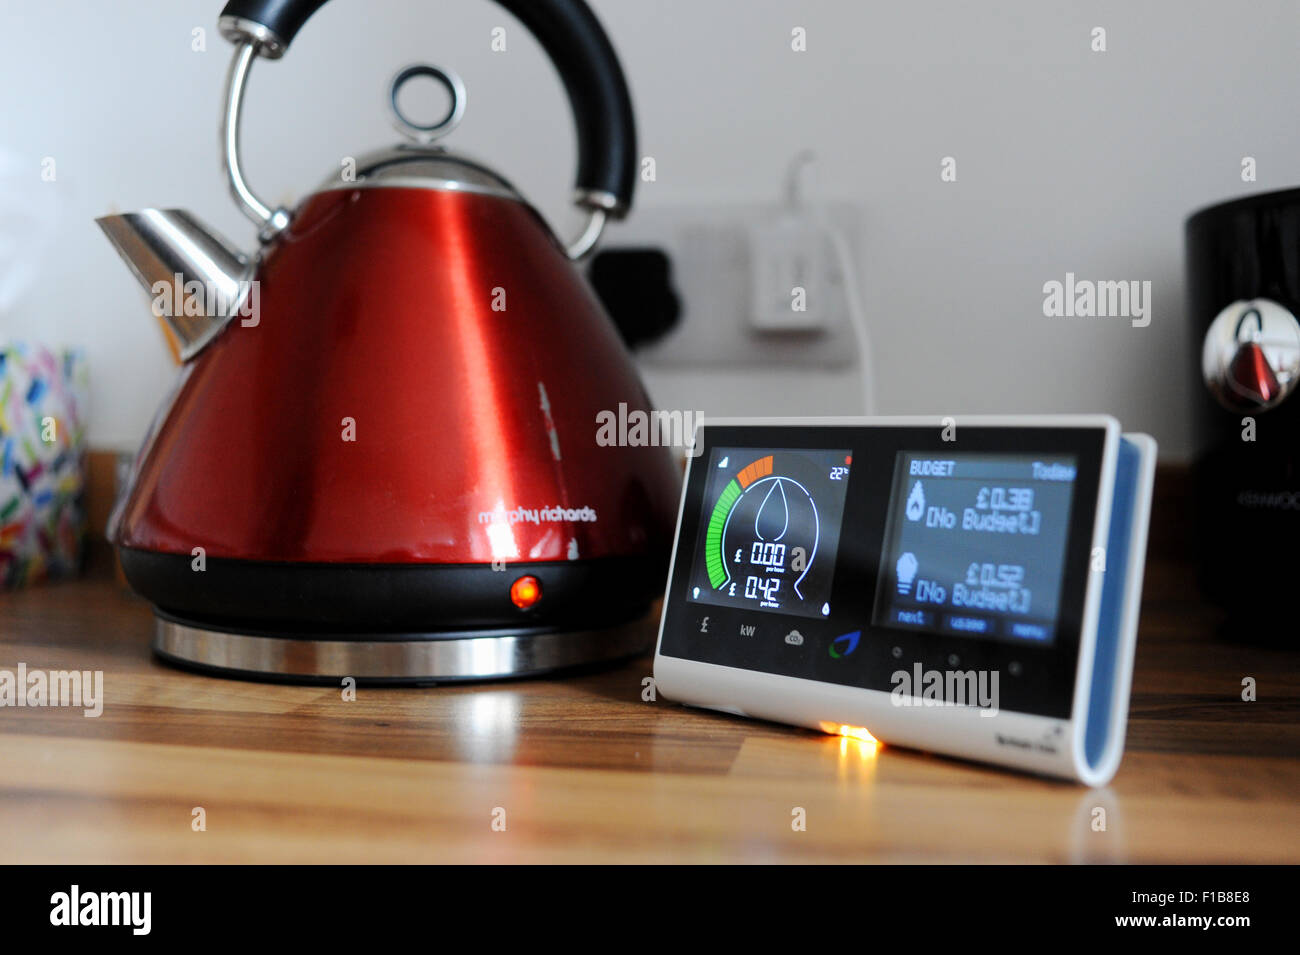 British Gas compteur intelligent montrant la consommation d'électricité et de gaz utilisé avec un appareil domestique électrique dans la cuisine Banque D'Images